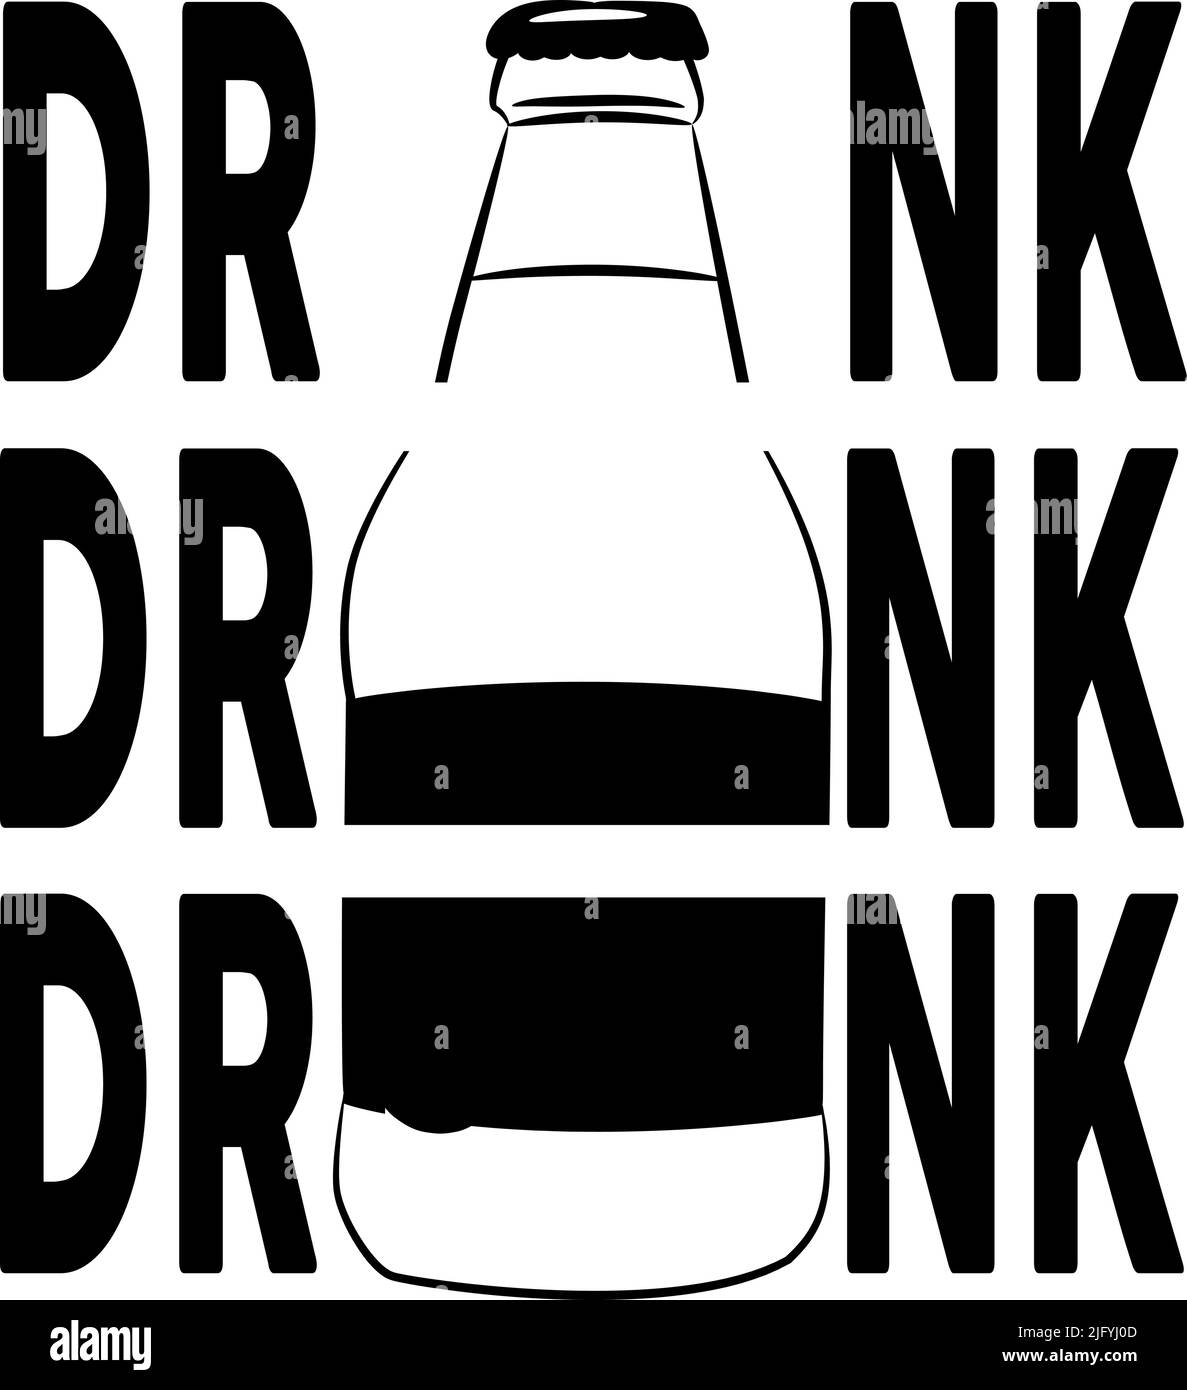 Drinking T-shirt Design, Wine/Beer Drinking T-shirt Design, Funny Drinking Shirts, Drinking Party T-shirt Designs, Beer T-shirt Designs Illustration de Vecteur